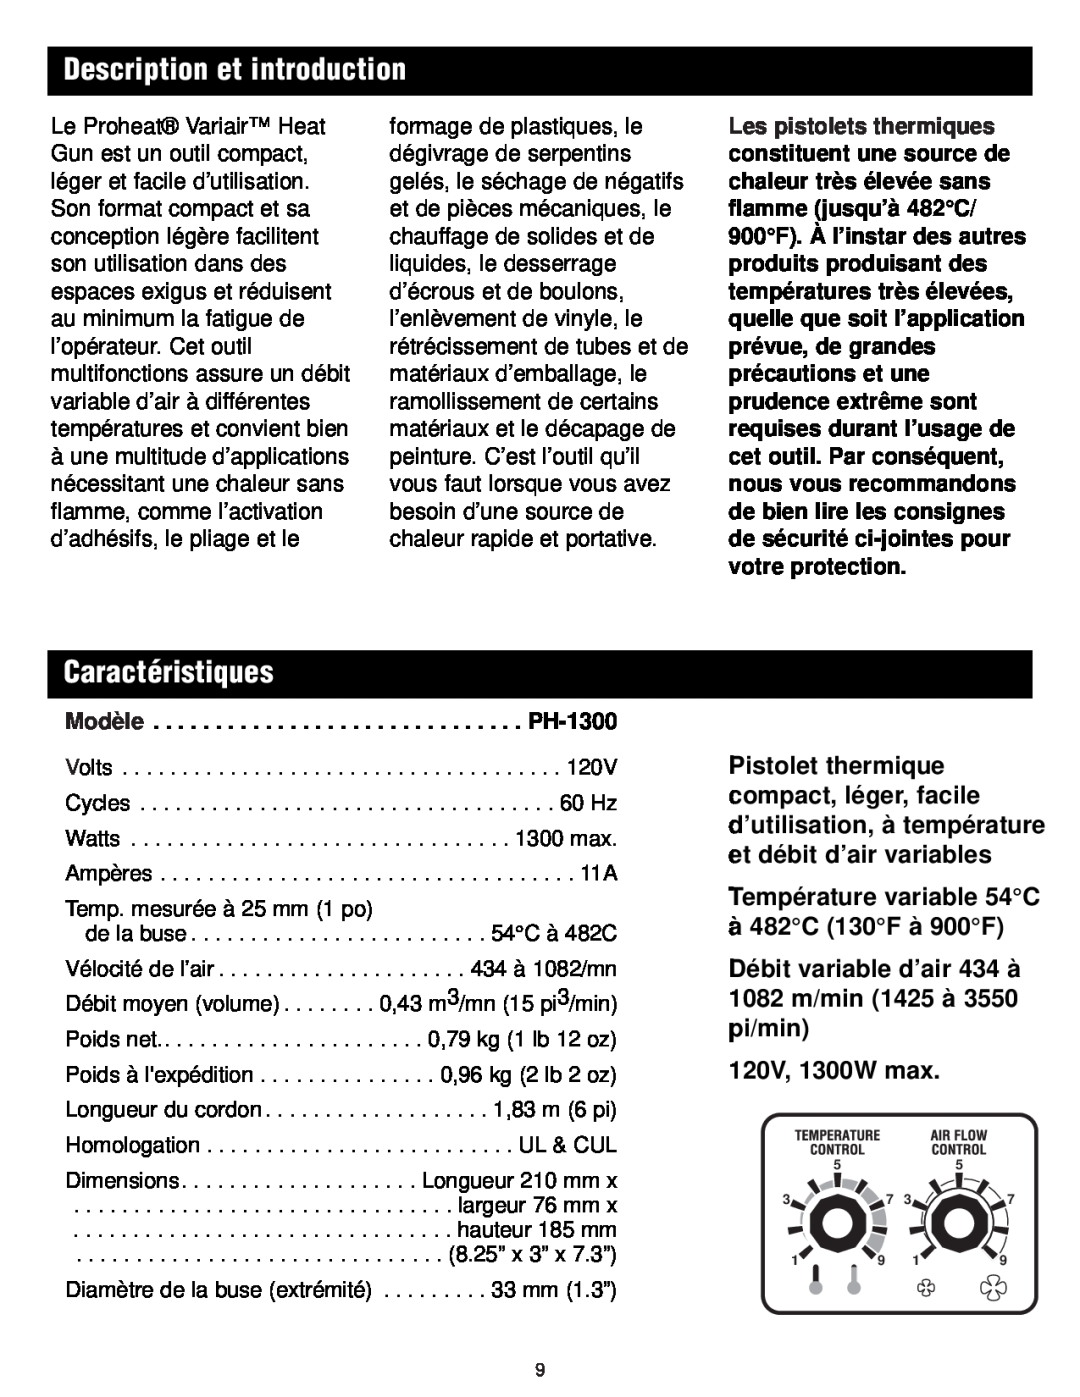 Master Appliance 1425-3550 FPM130-900F instruction manual Description et introduction, Caractéristiques, 120V, 1300W max 